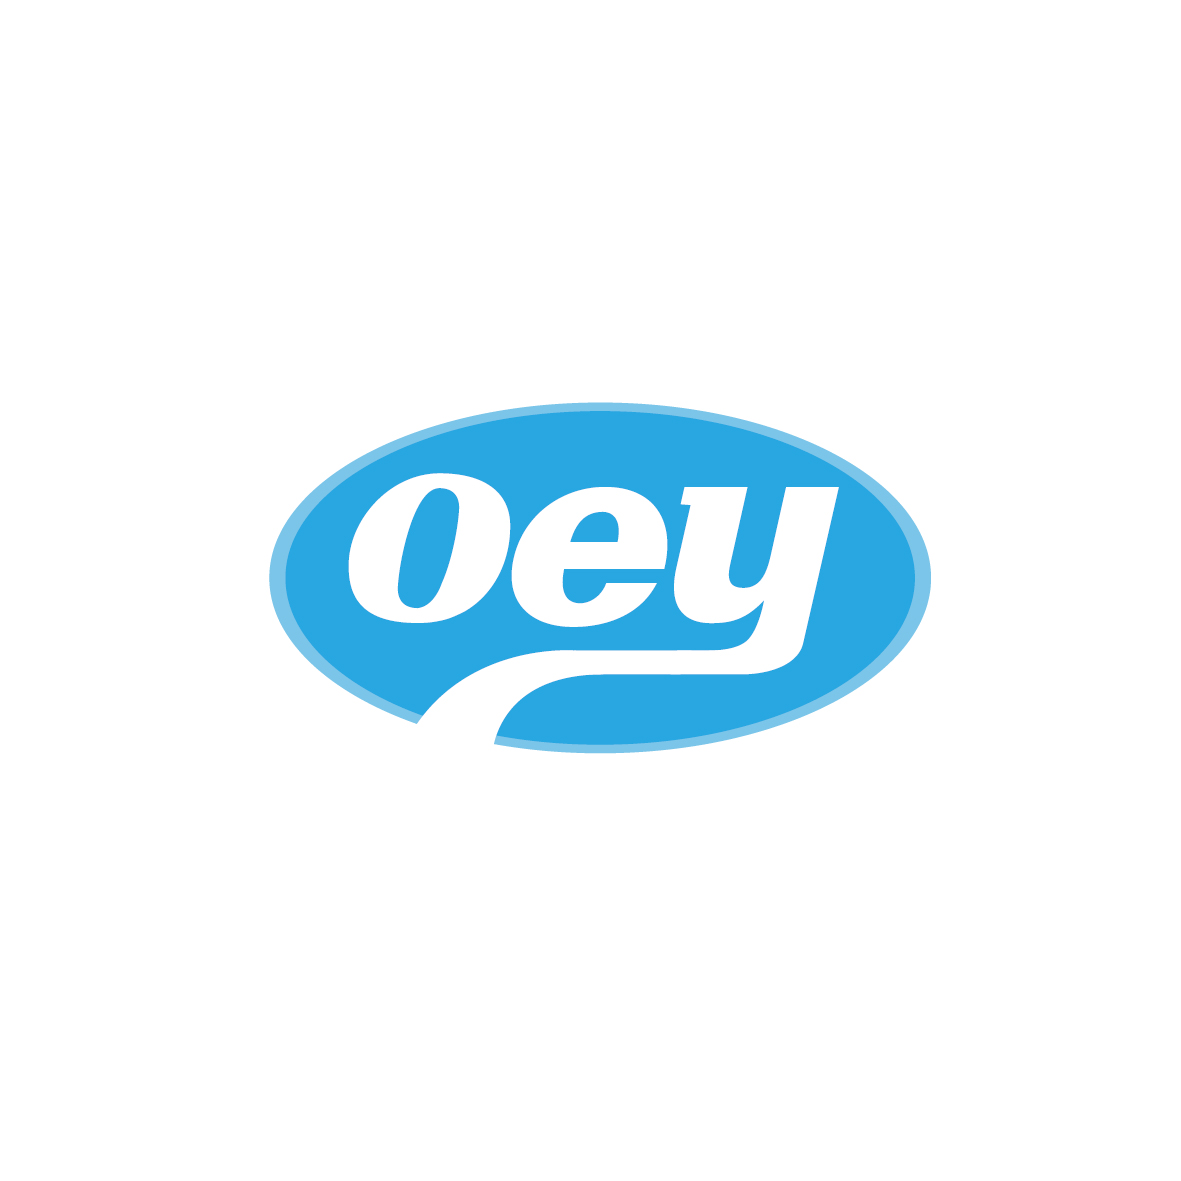 广州市君衍电子商务商行商标OEY（05类）商标买卖平台报价，上哪个平台最省钱？